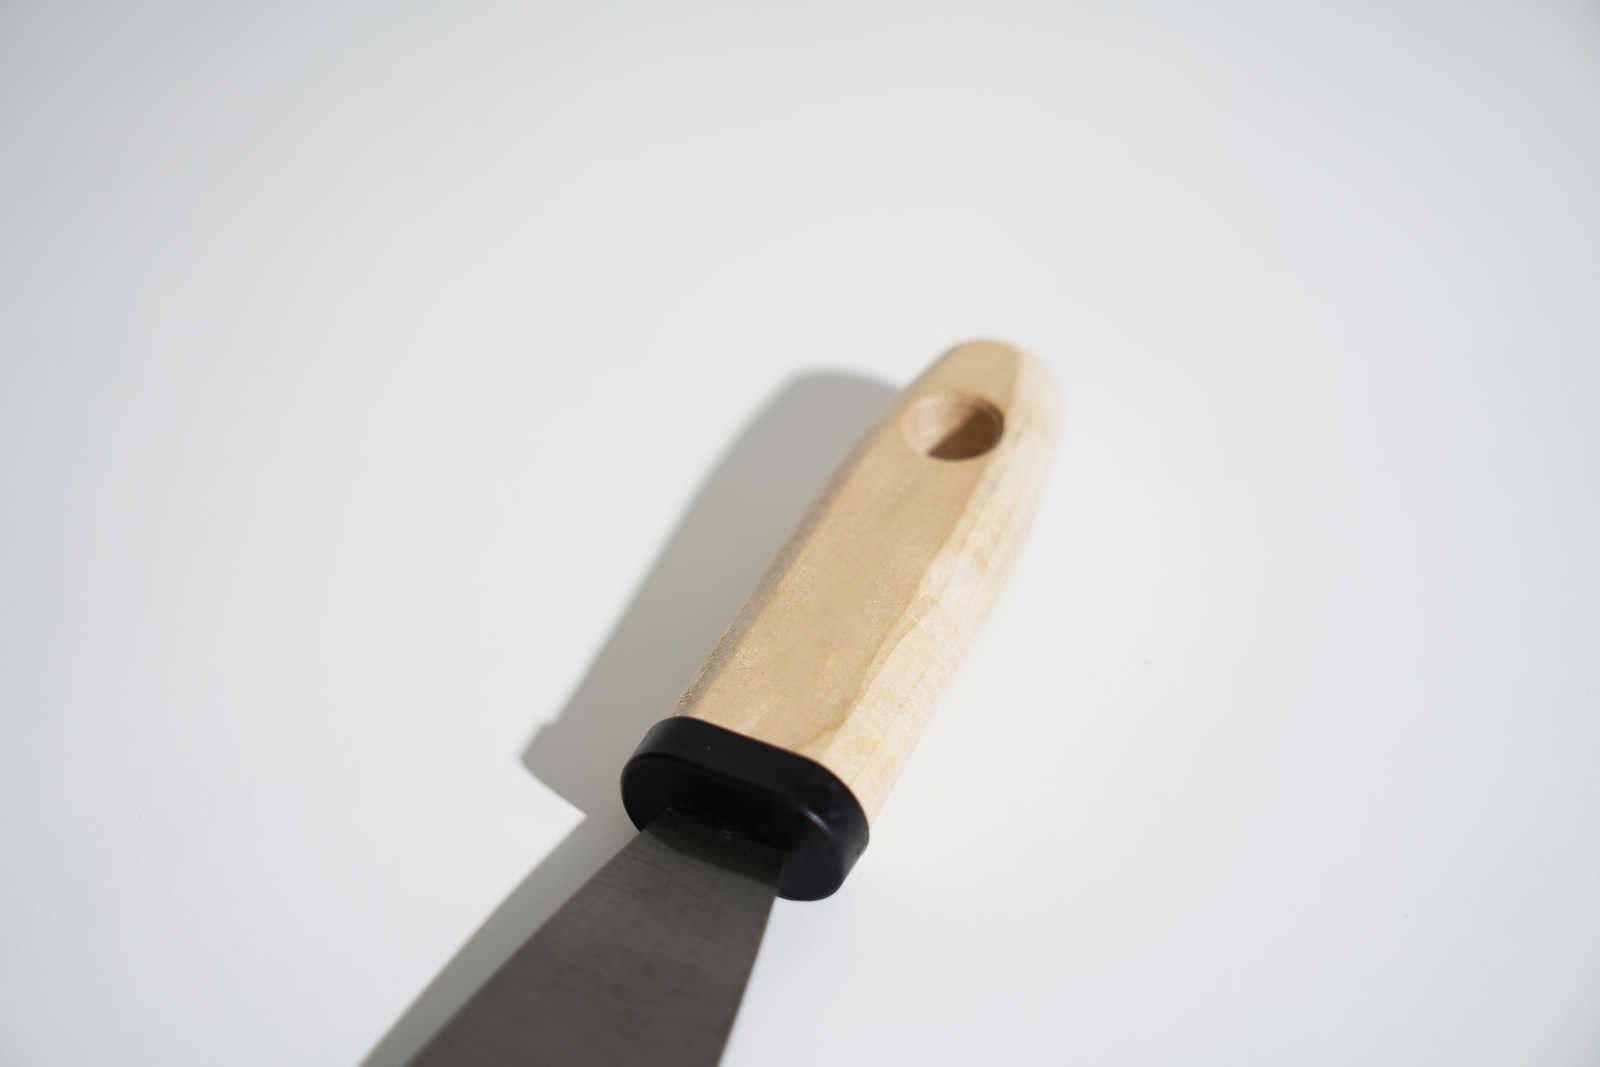             Schilderspatel 40mm met flexibel stalen blad & houten handvat
        